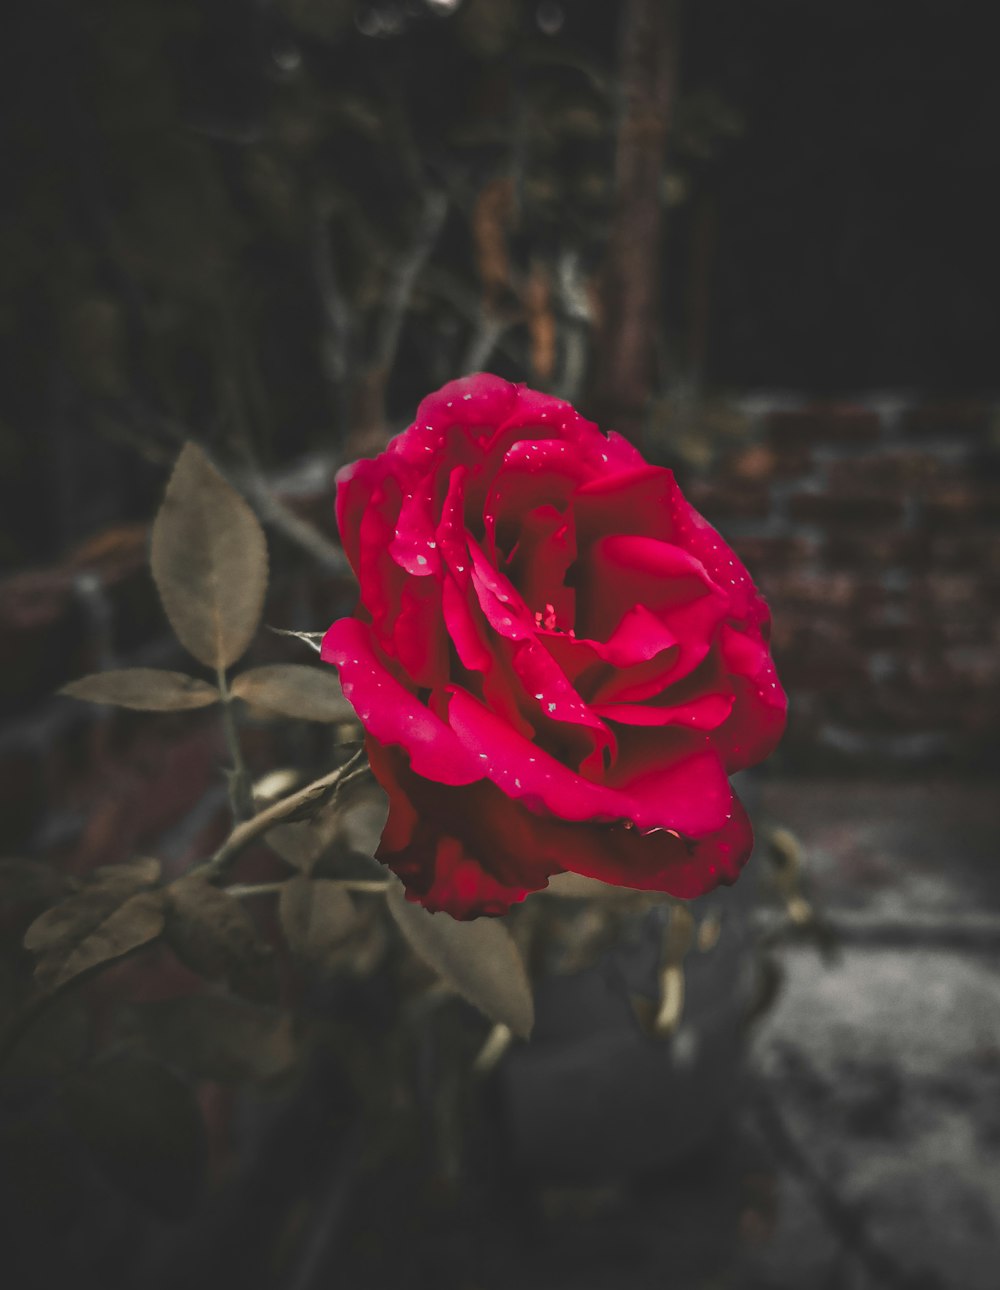 水滴がついた赤いバラ